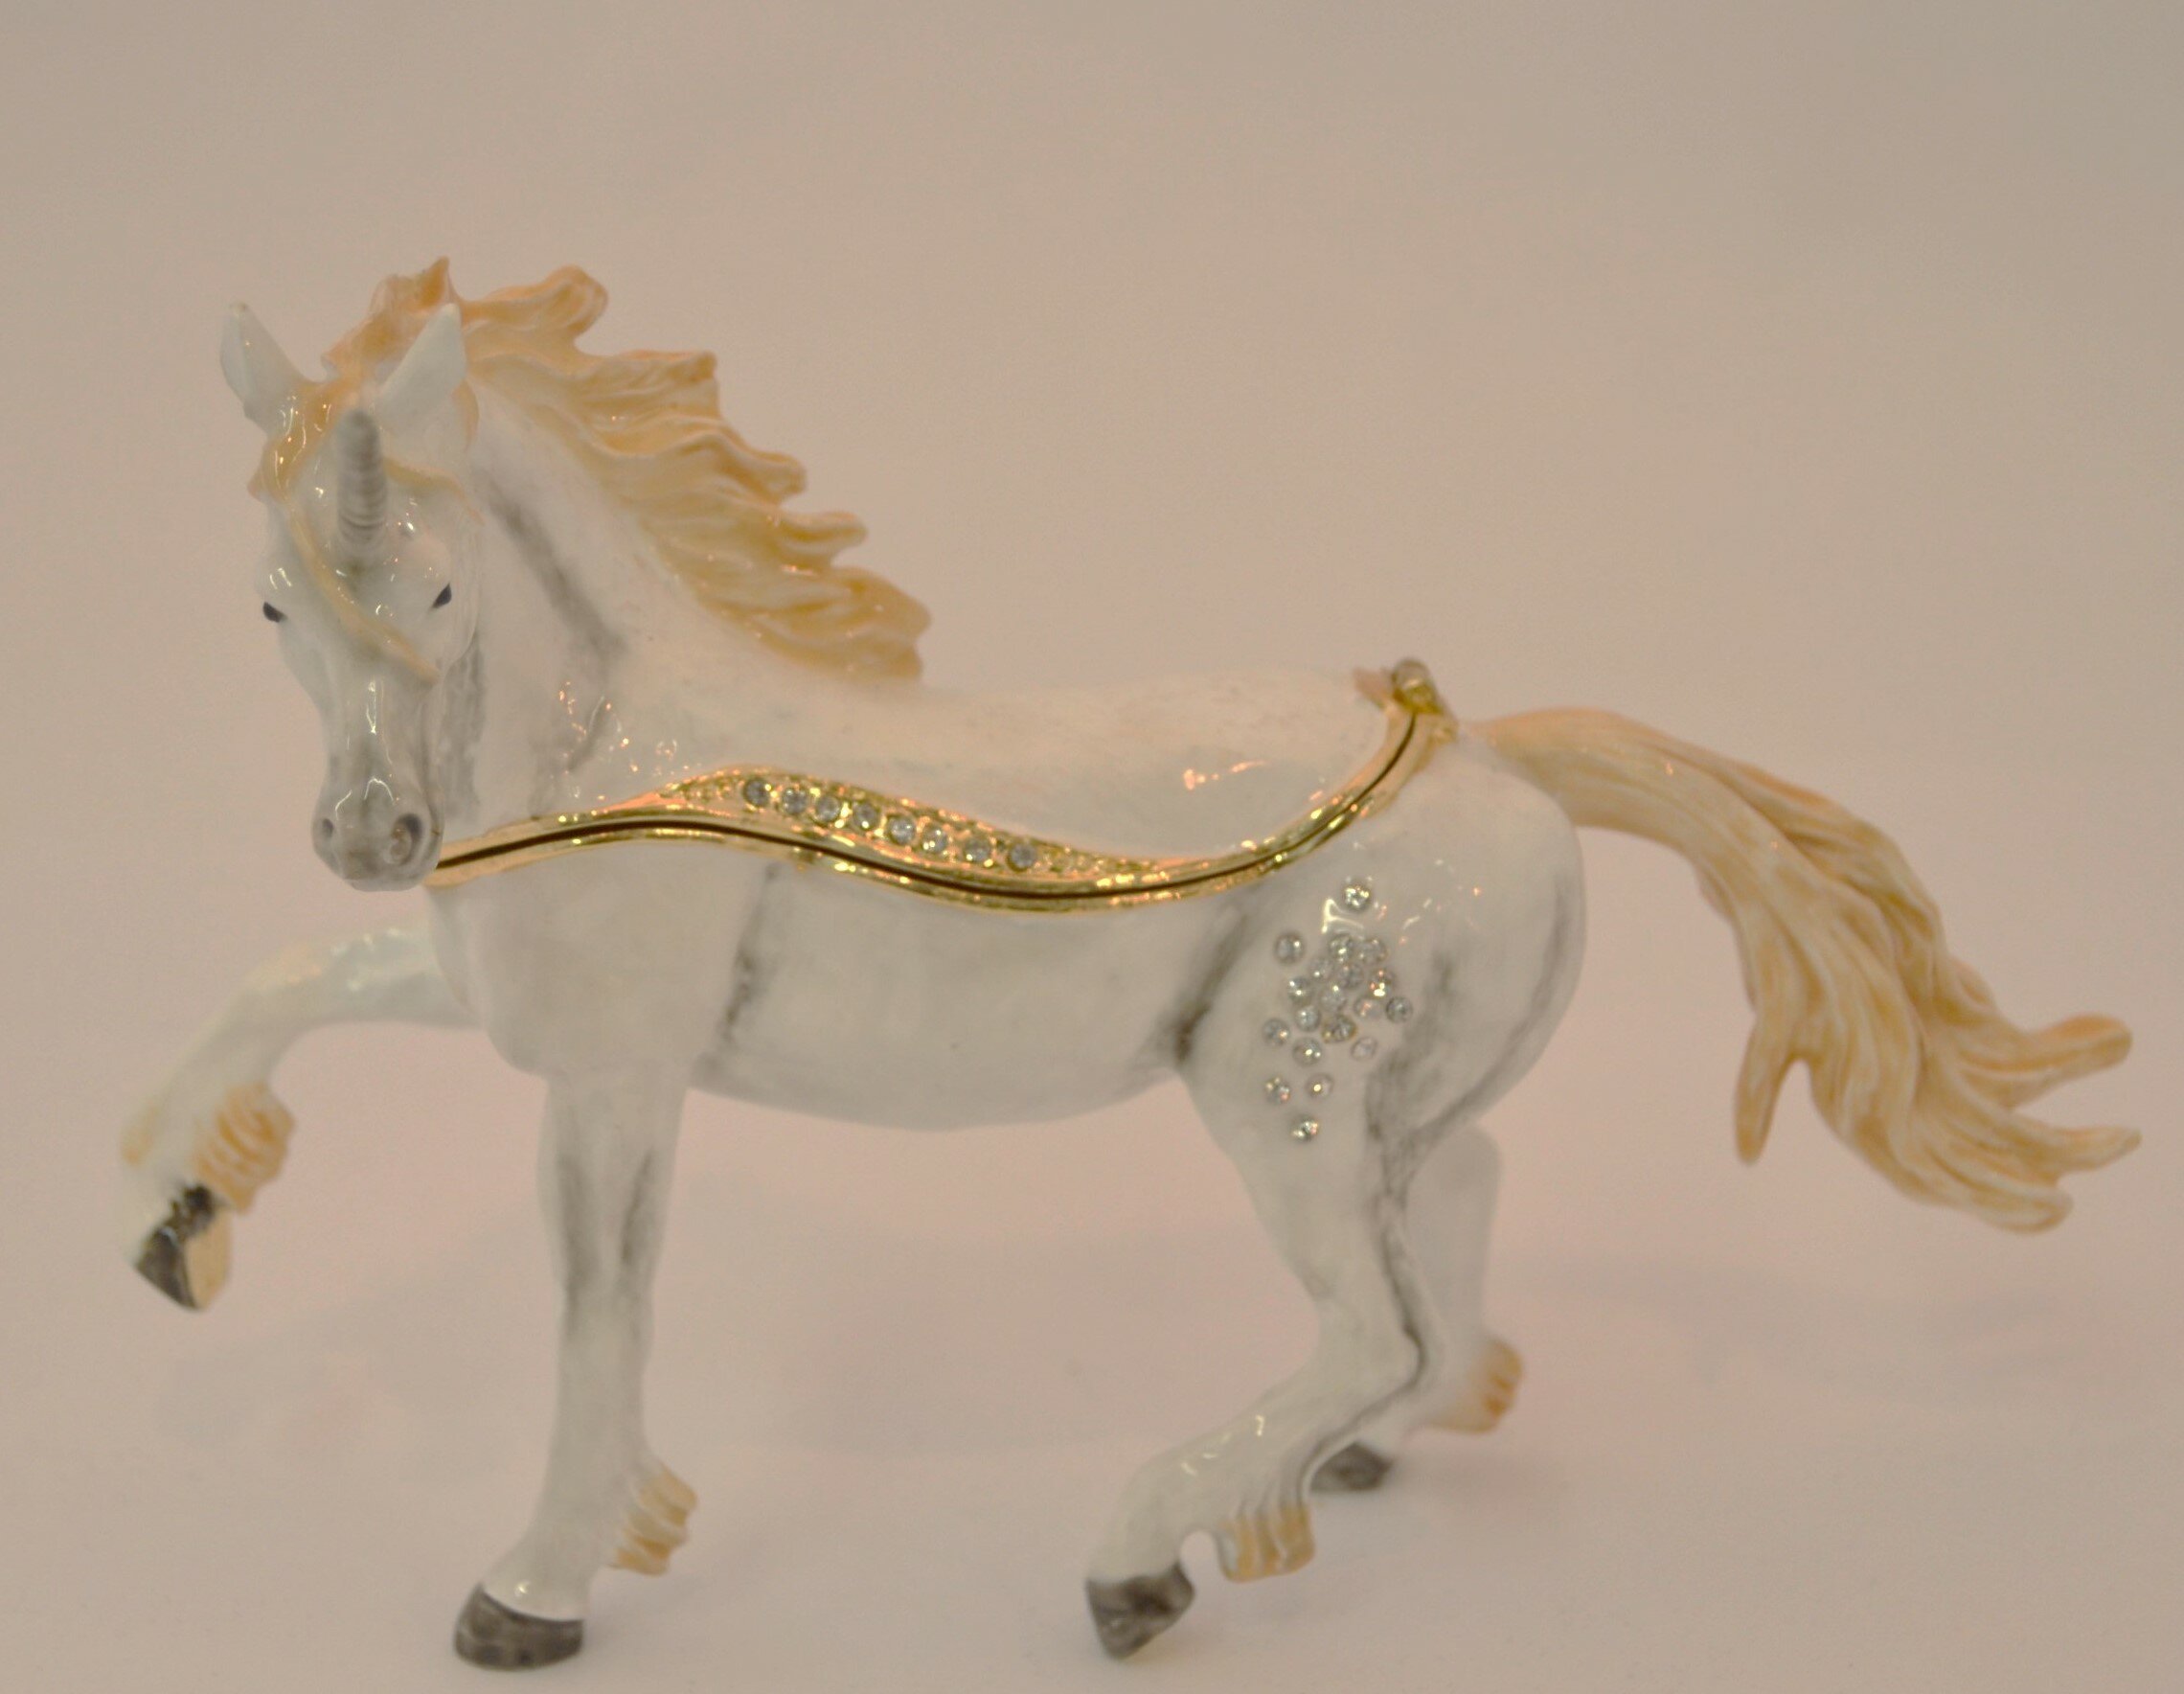 CIEL Decorative Jeweled Horse Trinket Box Hinged Opening Hand Painted Enamel